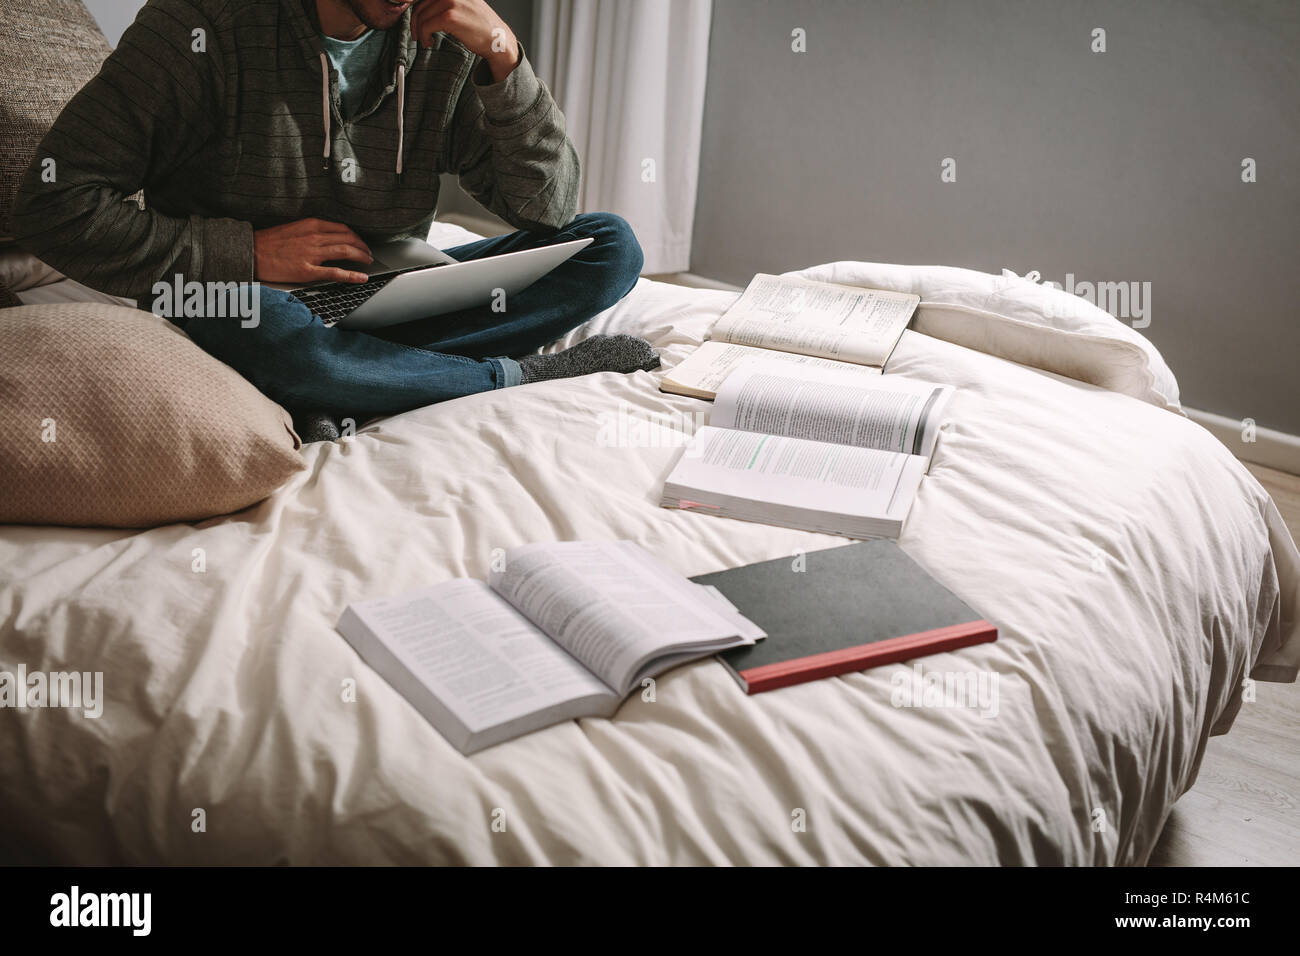 Studente di hard seduta sul letto con il computer portatile e libri sul letto. Studente utilizzando laptop seduto con i libri sparsi sul letto. Foto Stock